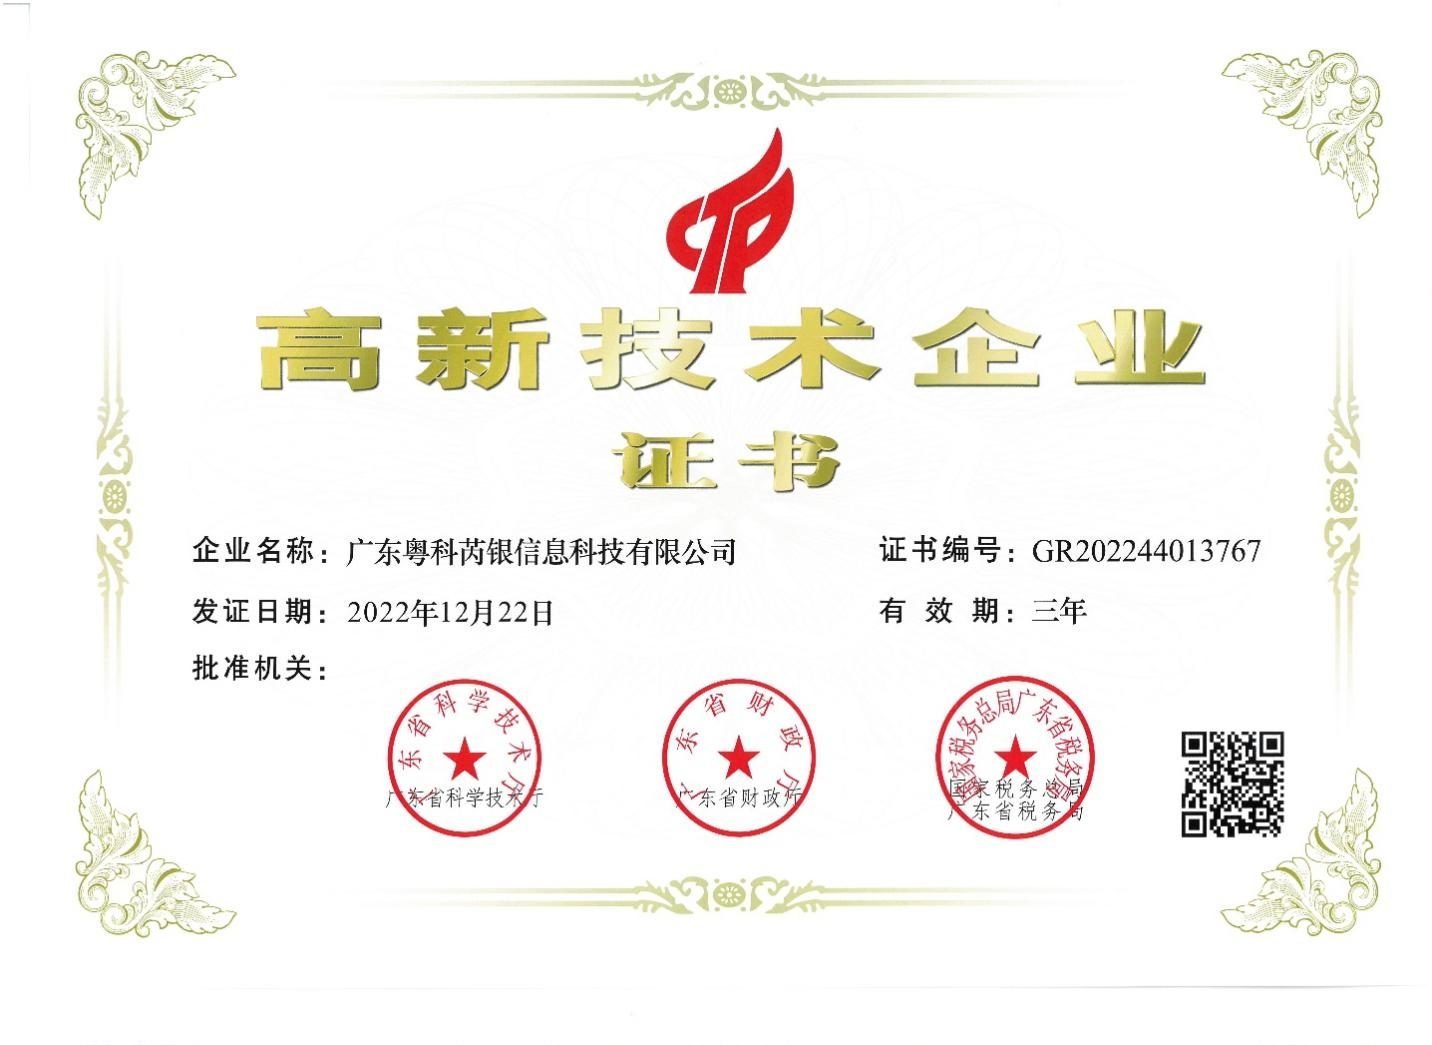 广东粤科芮银信息科技有限公司（简称：粤科芮银）成功通过认证获评“国家级高新技术企业”。